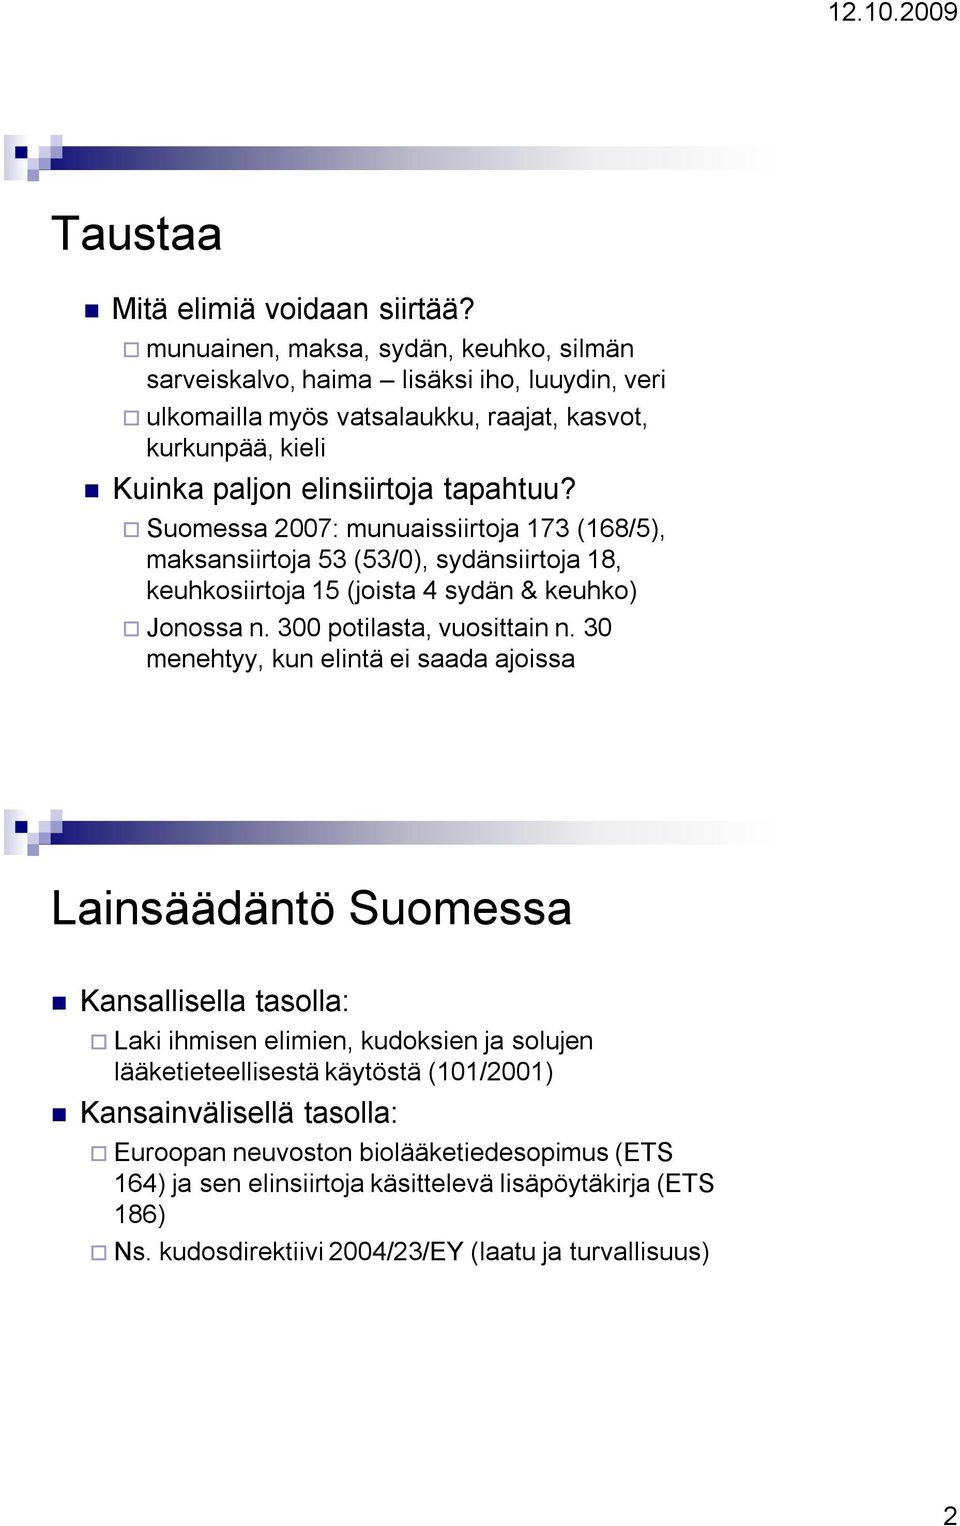 Suomessa 2007: munuaissiirtoja 173 (168/5), maksansiirtoja 53 (53/0), sydänsiirtoja 18, keuhkosiirtoja 15 (joista 4 sydän & keuhko) Jonossa n. 300 potilasta, vuosittain n.